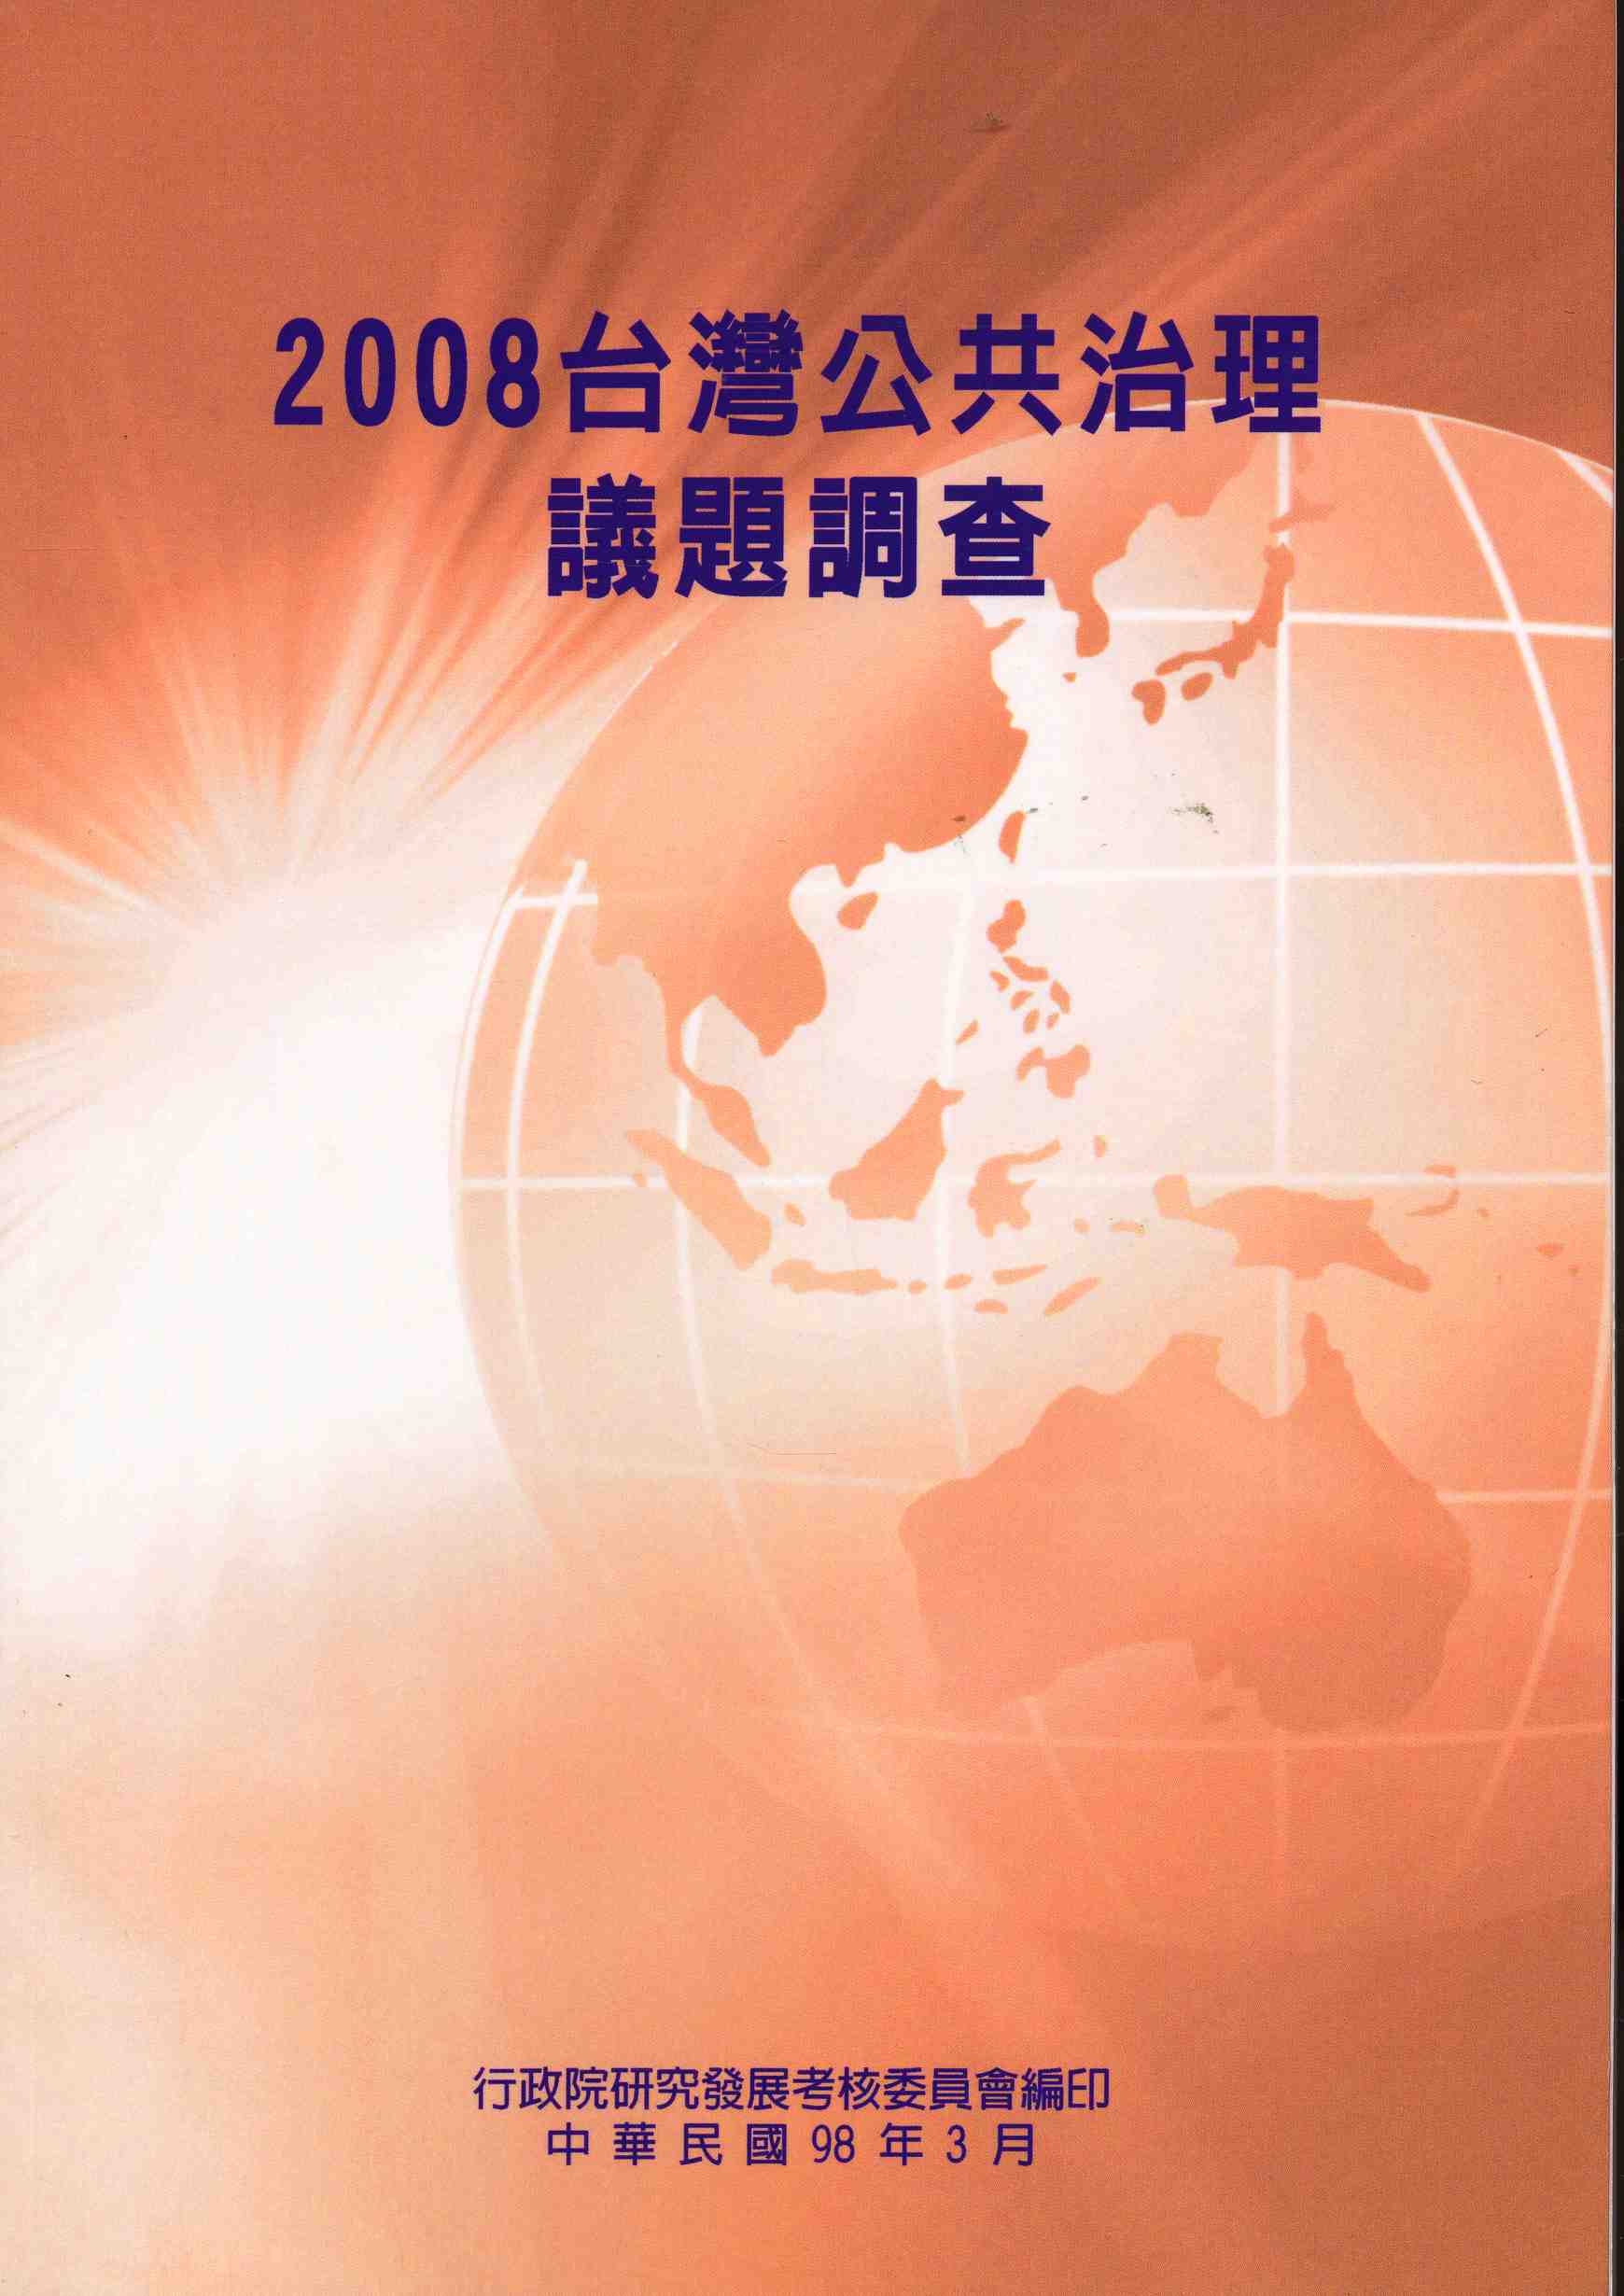 2008台灣公共治理議題調查